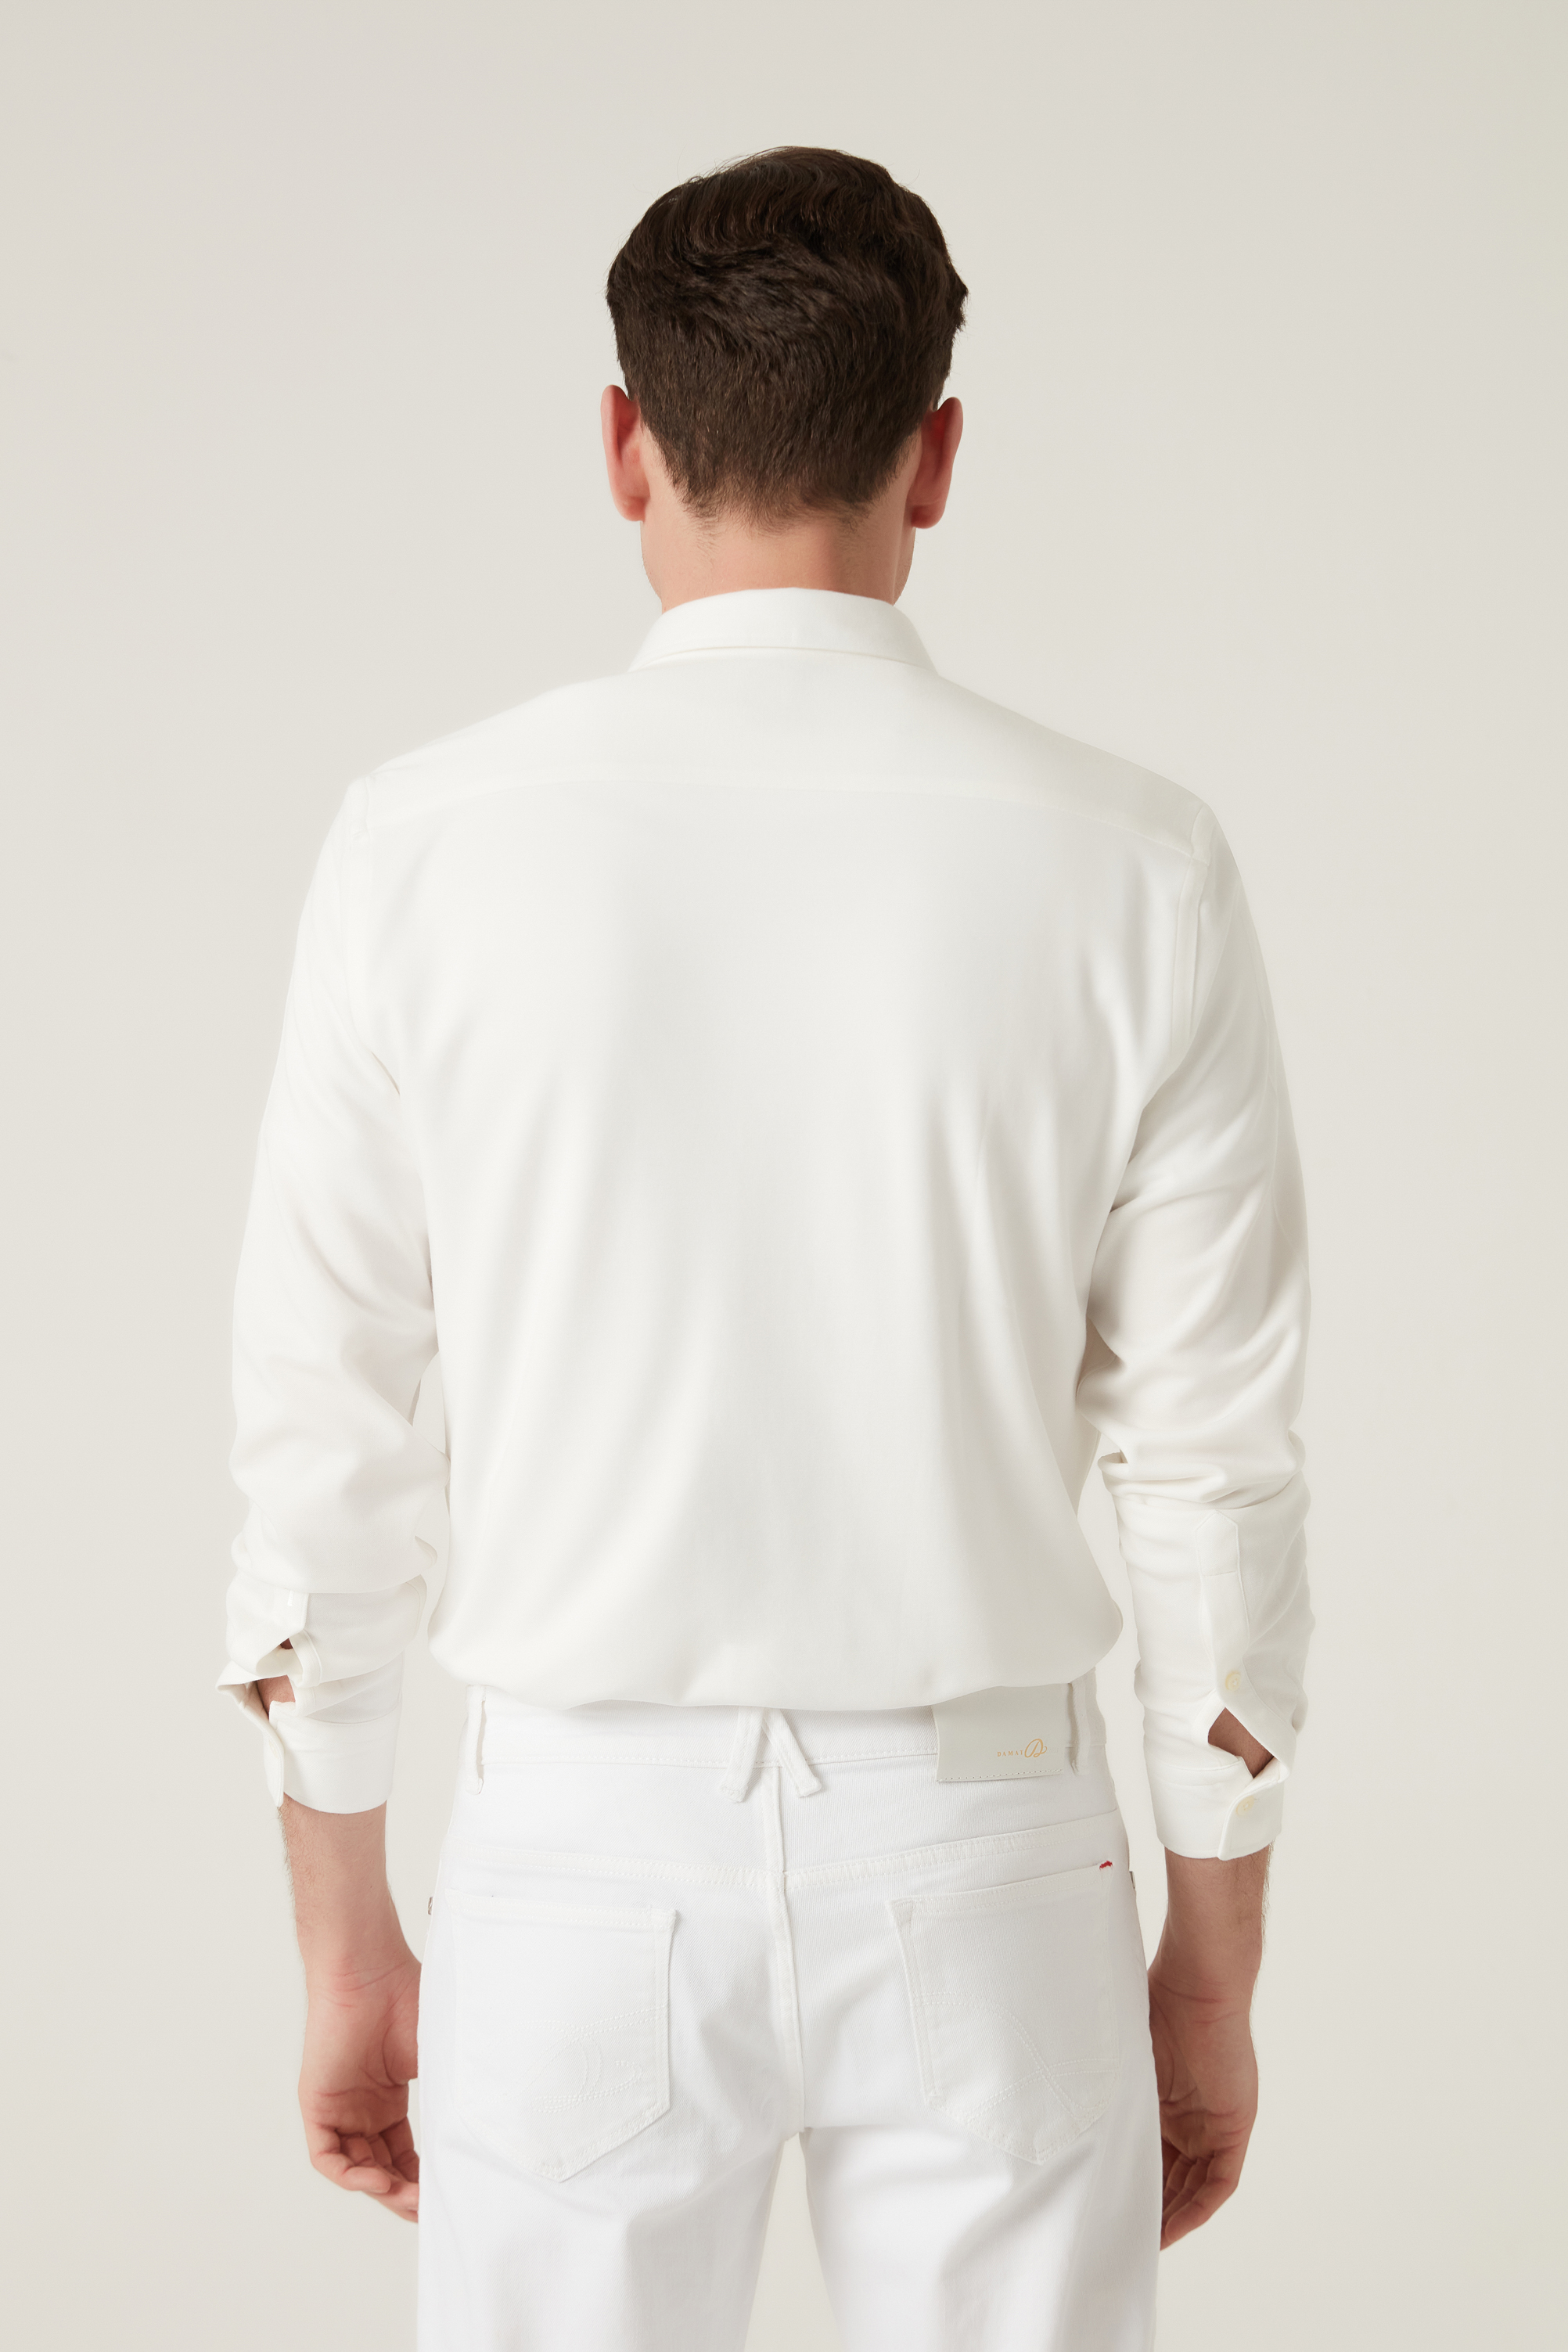 Damat Tween Tween Slim Fit Beyaz Baskılı Örme Gömlek. 5